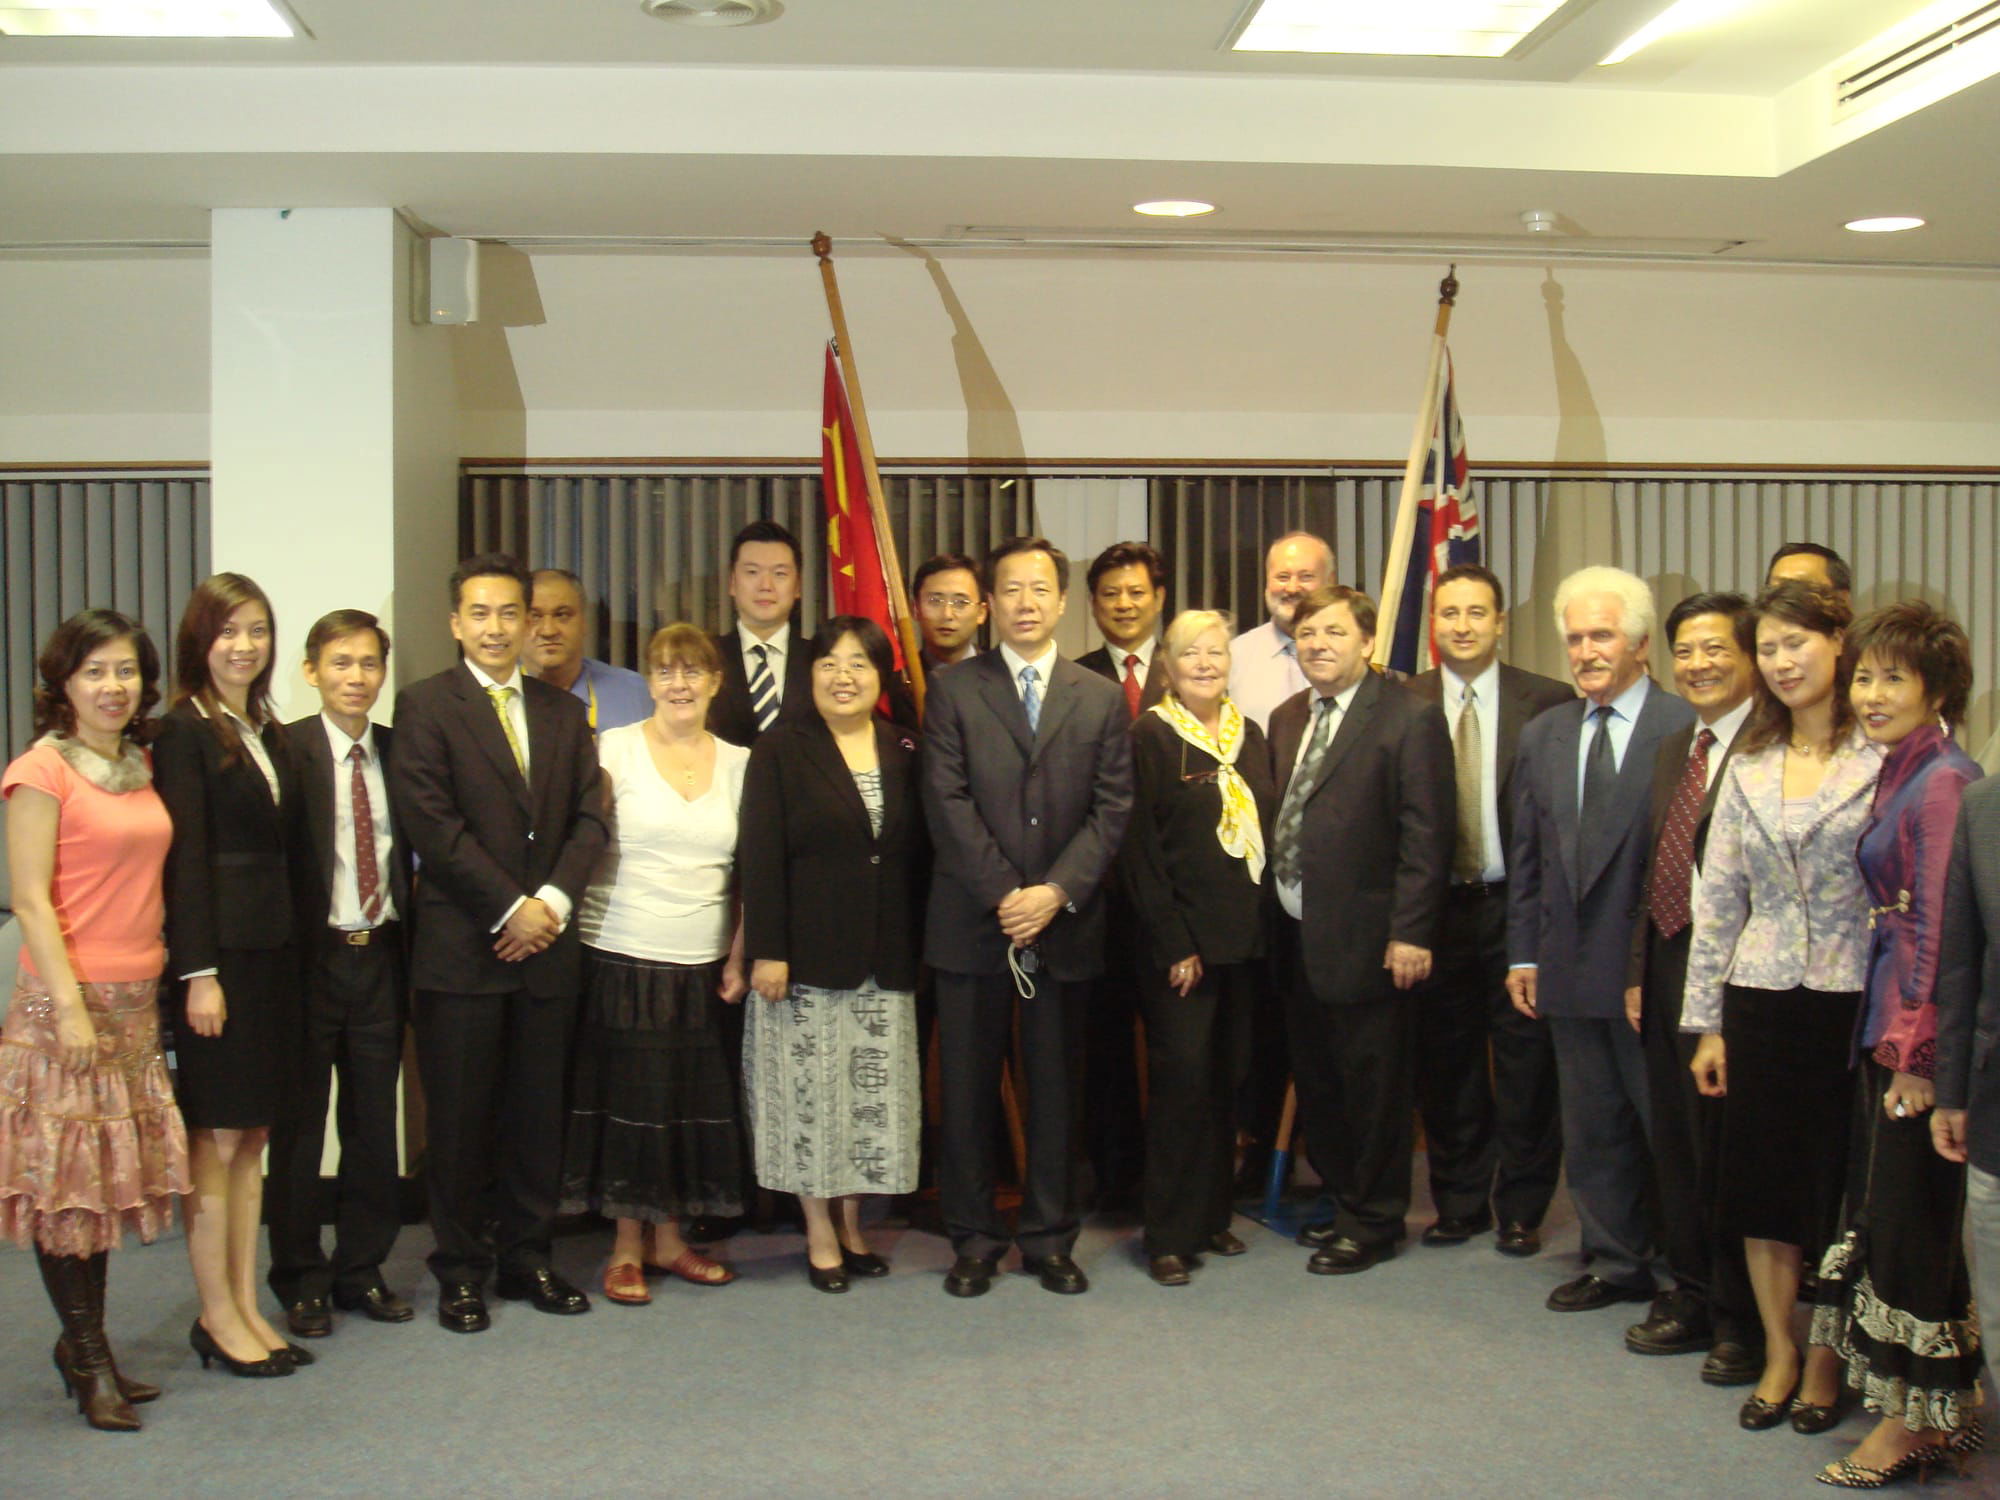 Nanjing's Mayor visit to Sydney